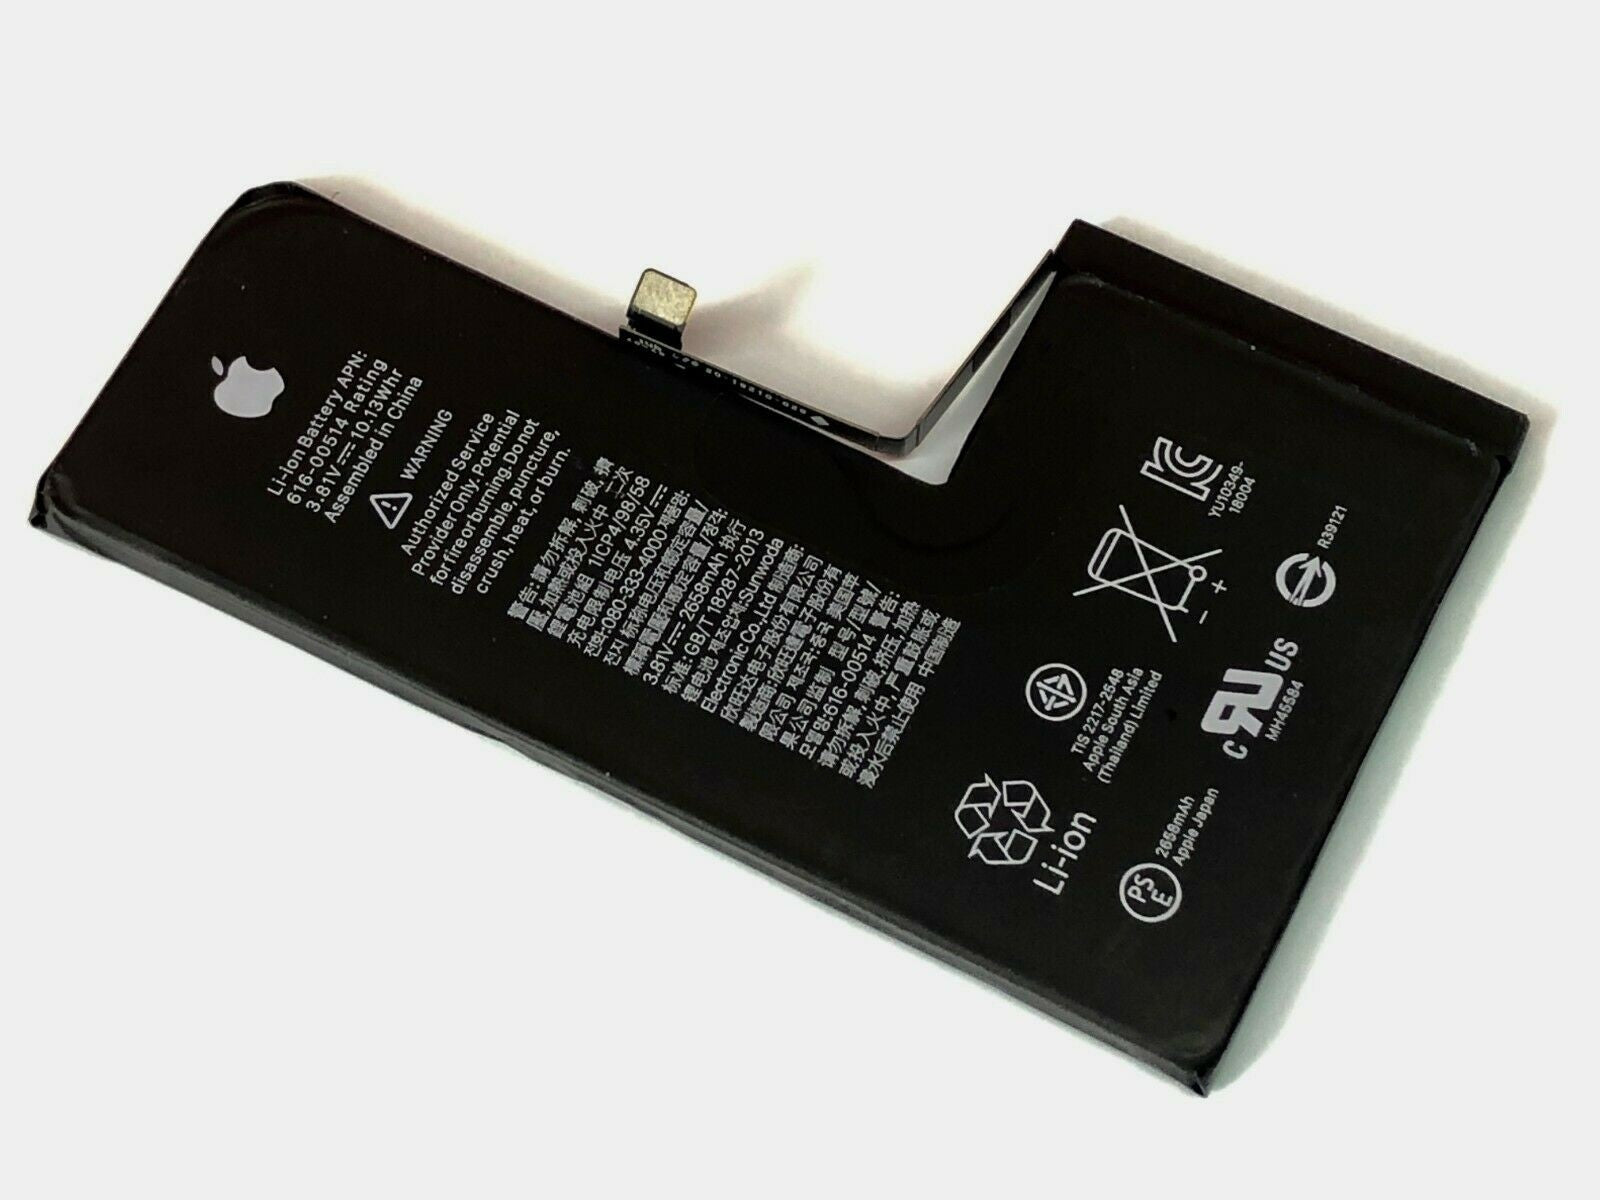 Bateria Para iPhone XS – Tool Room México